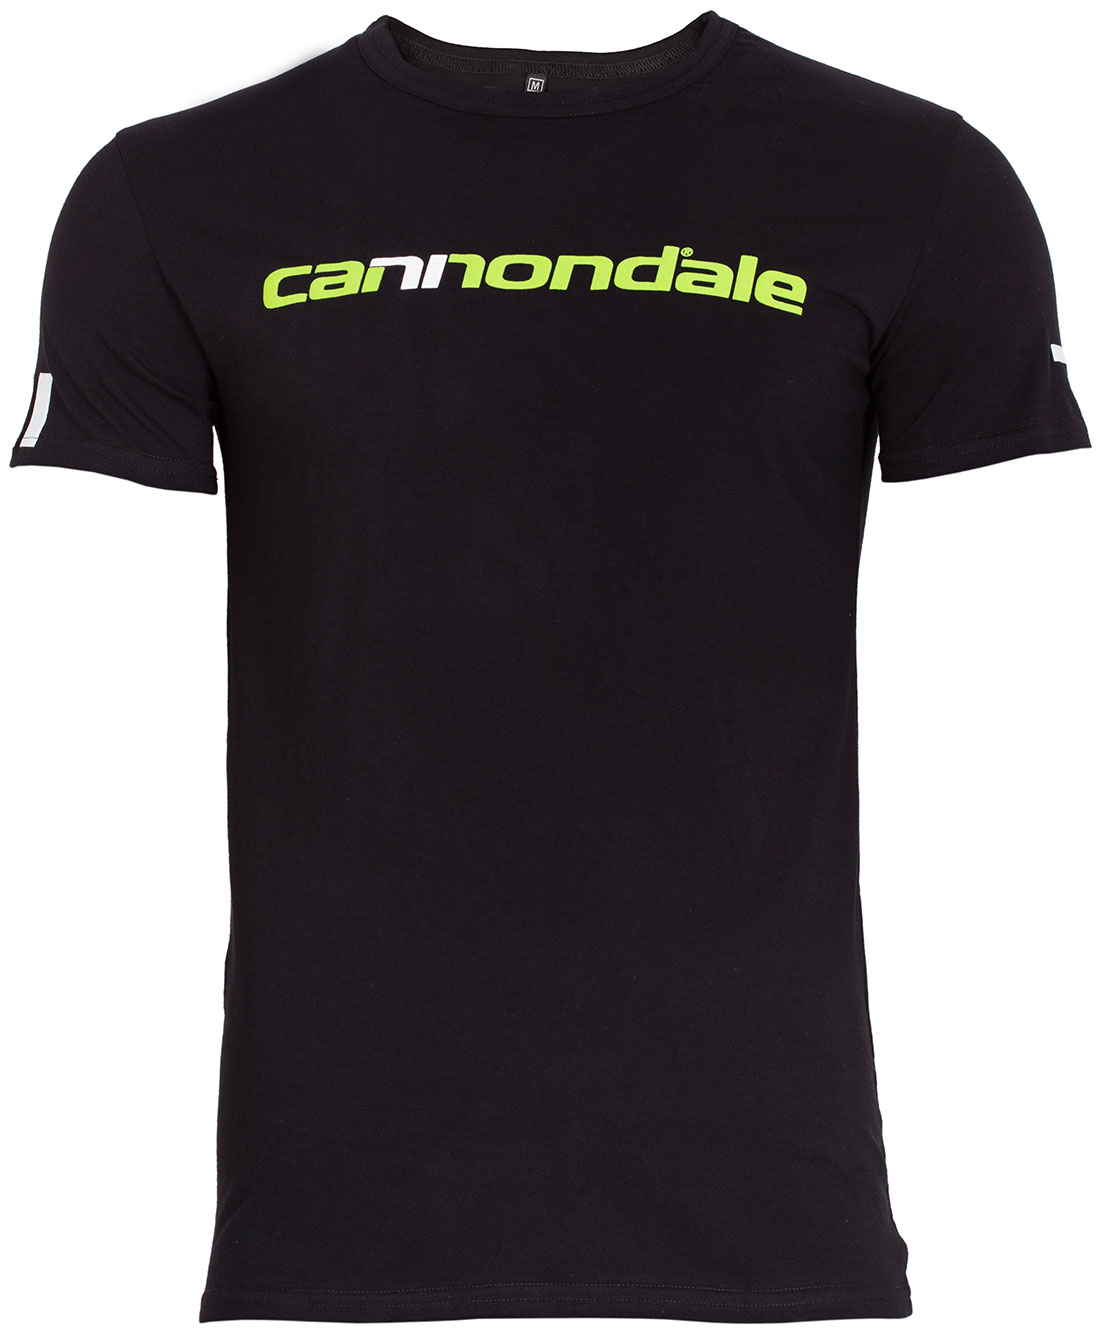 Футболка Cannondale з горизонтальним двоколірним логотипом, чорна, розмір L фото 